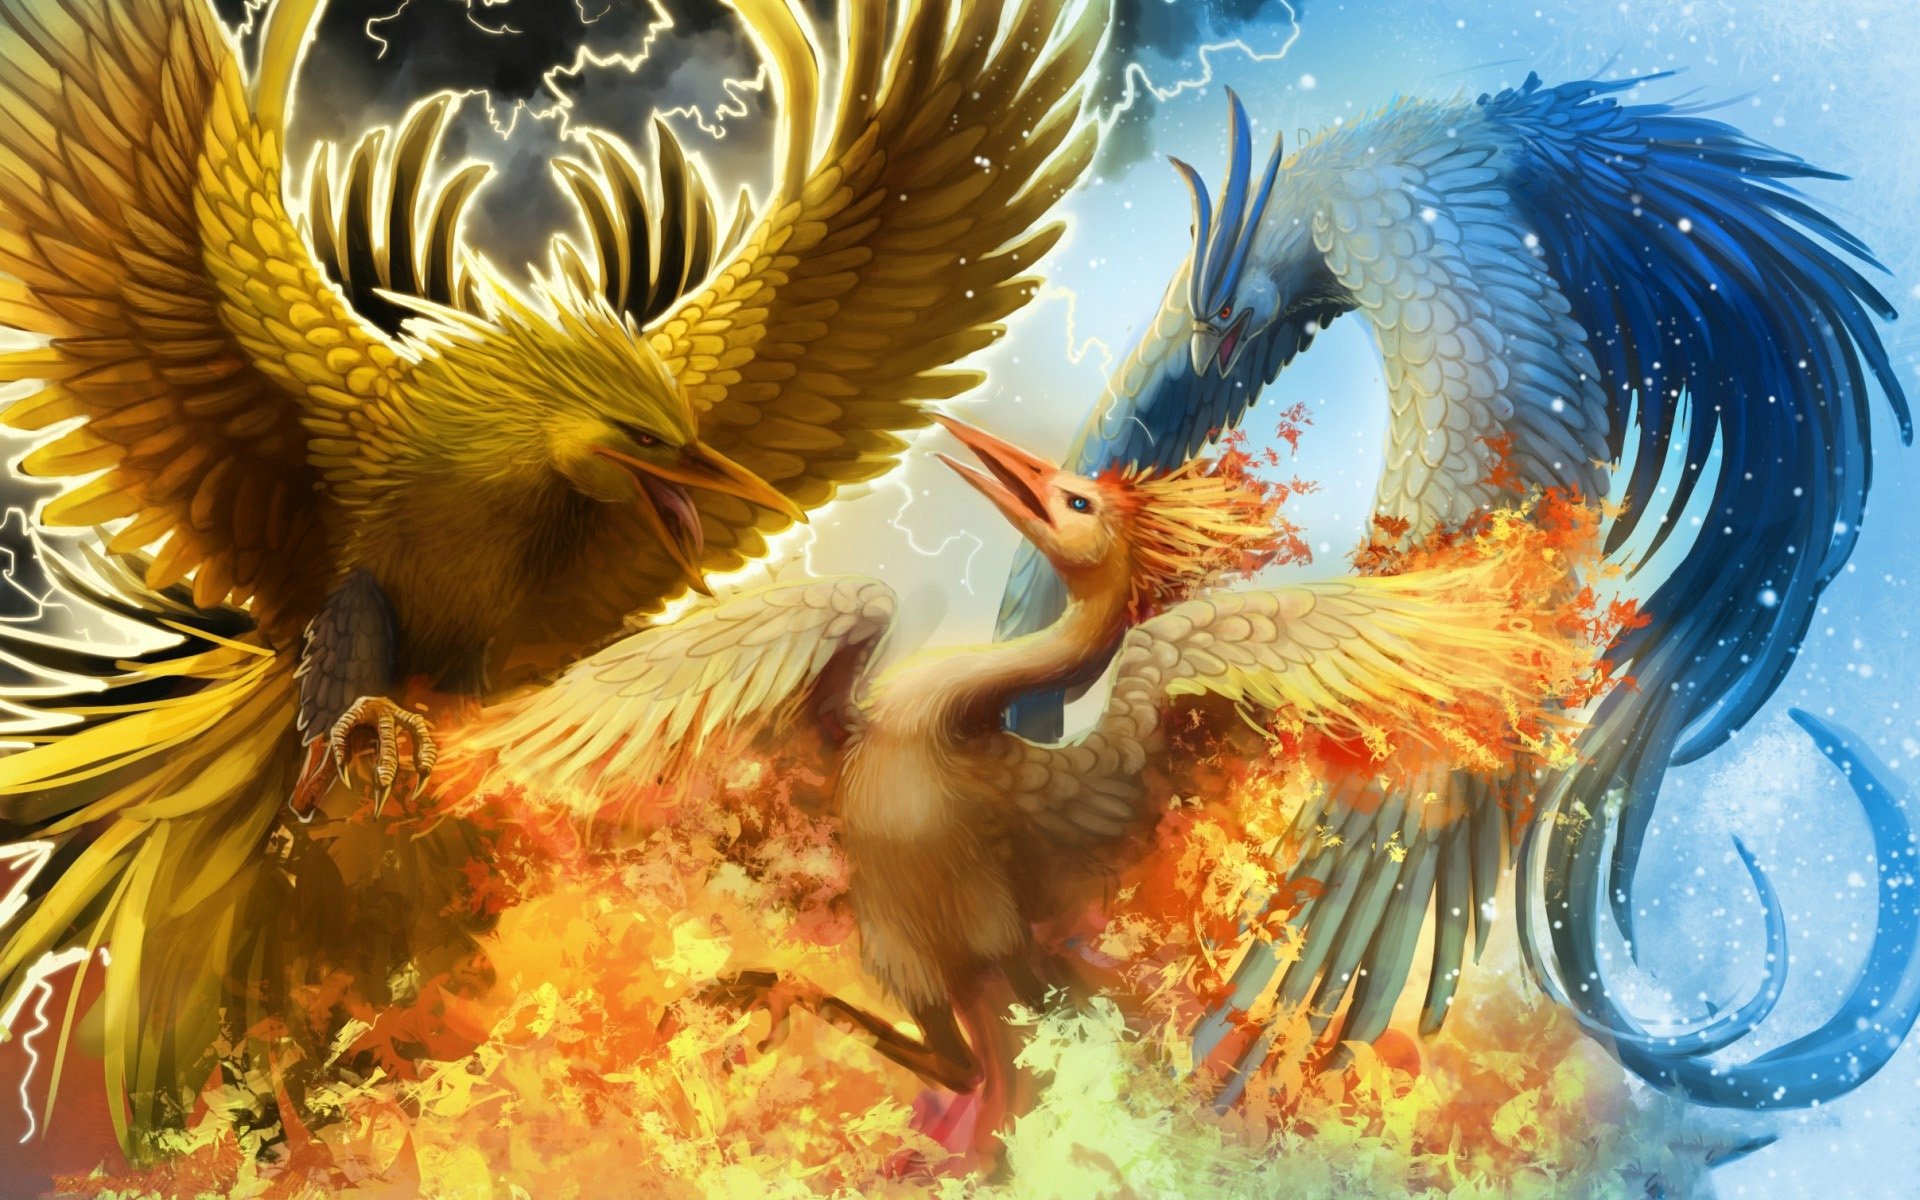 download phoenix winnonlin free